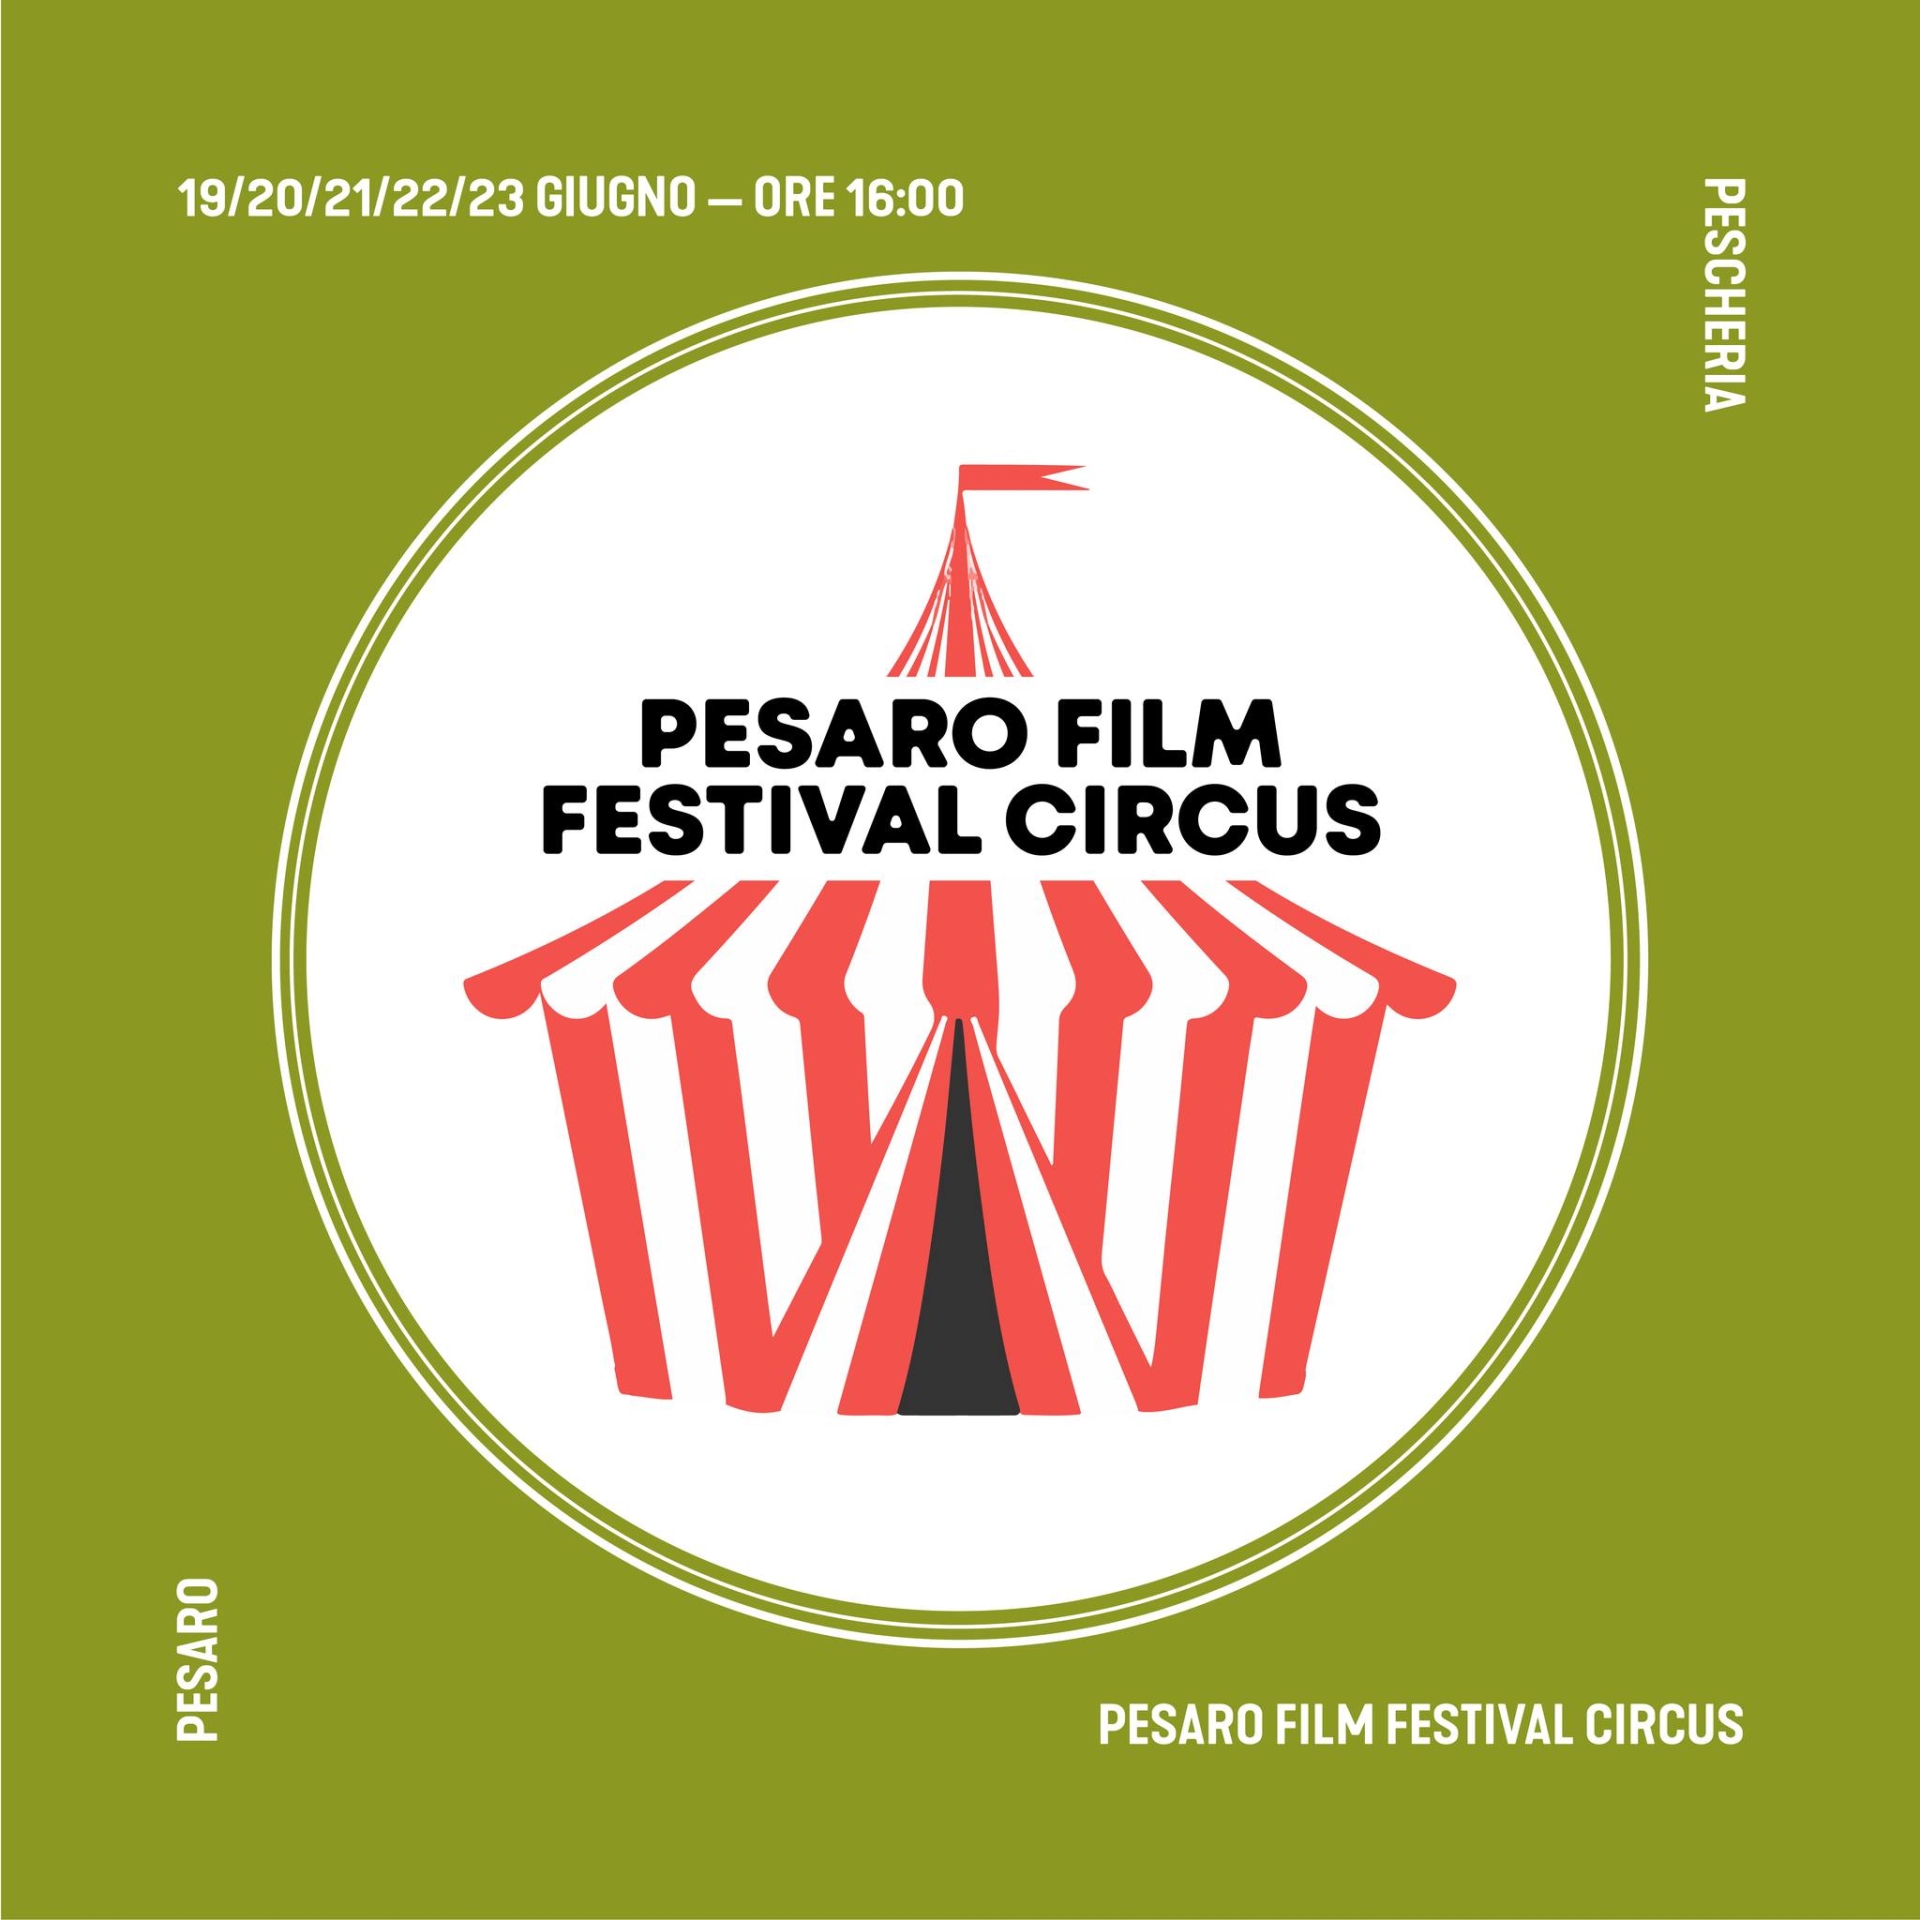 Al via il Pesaro Film Festival Circus